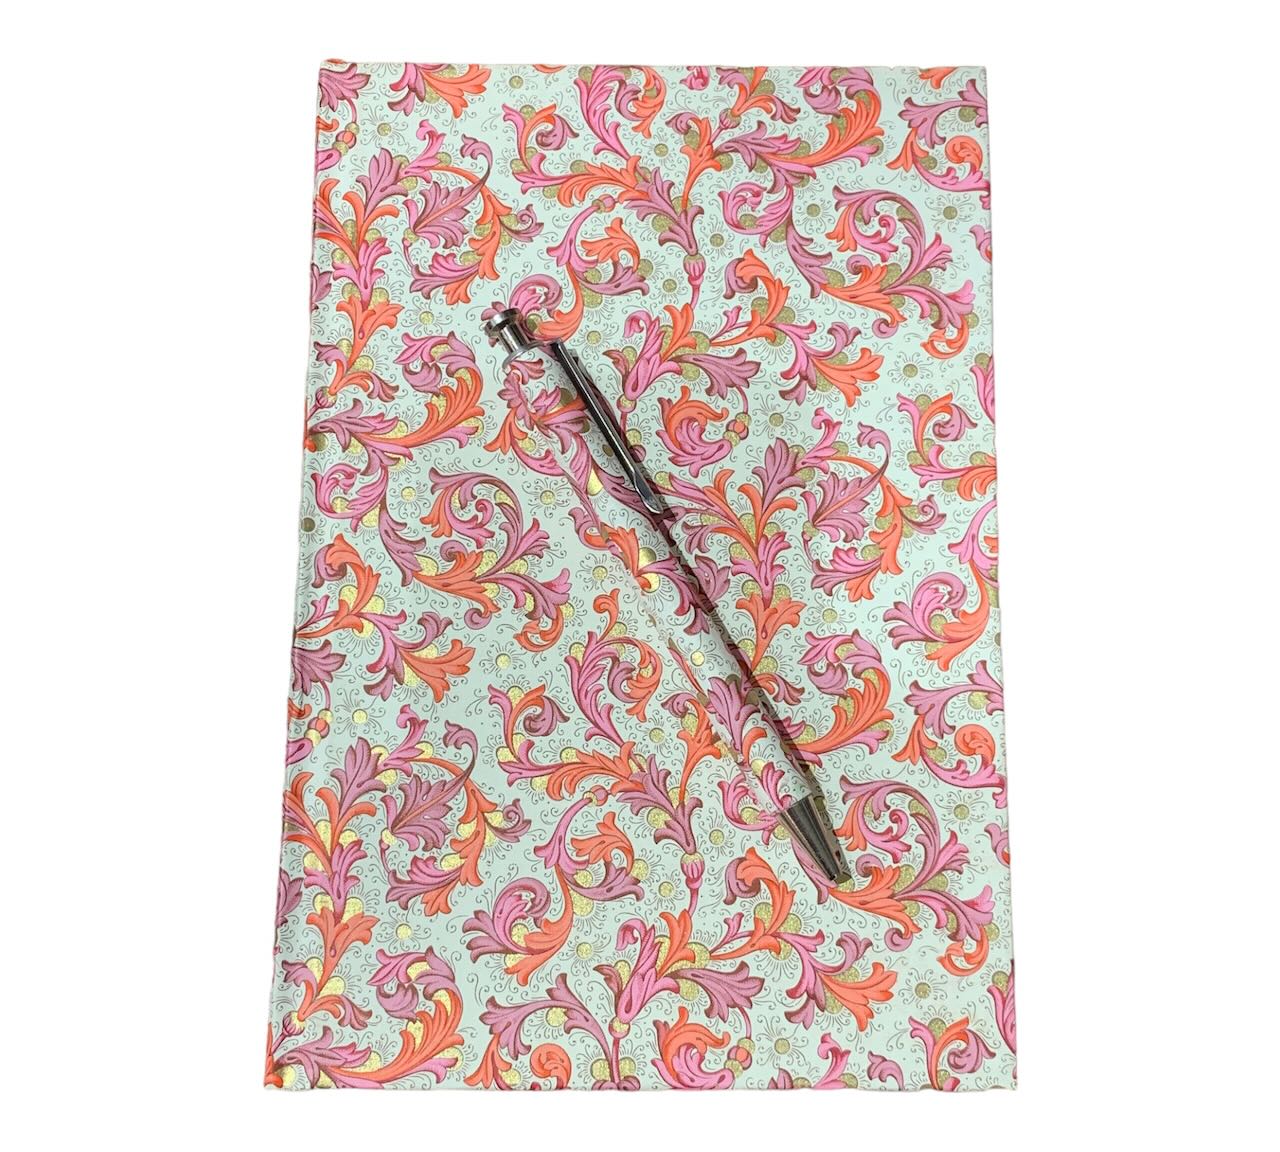 Din A5 Notizbuch mit Kuli in edlem Florenzpapier gebunden florales Muster rosa pink